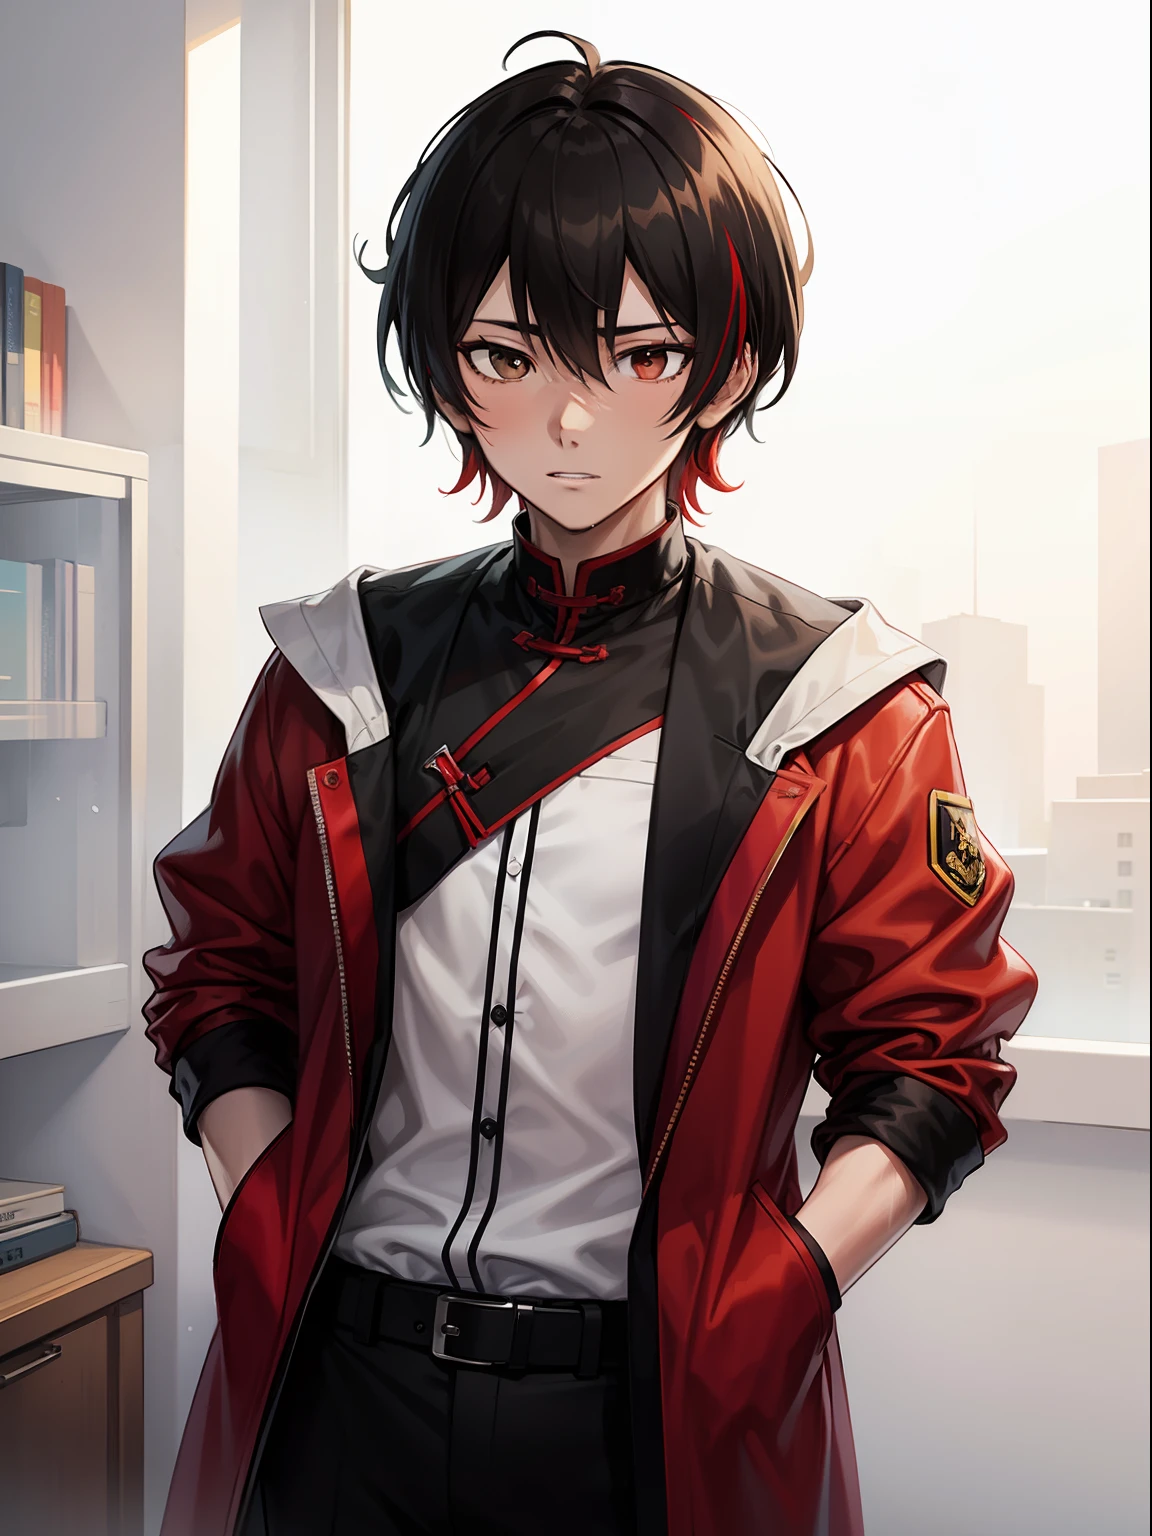 Detetive jovem chinês com altura média, pele pálida, Cabelo preto, Olhos castanhos, e cabelos com mechas vermelhas, em uma arte altamente detalhada em estilo anime.